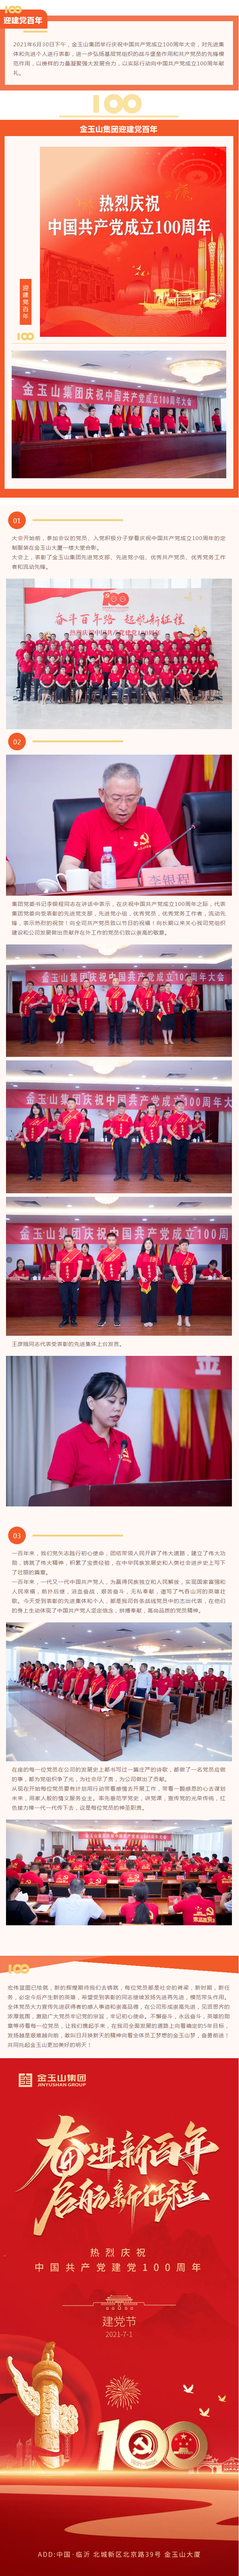 金玉山集團舉行慶祝中國共産黨成立100周年大會11.jpg